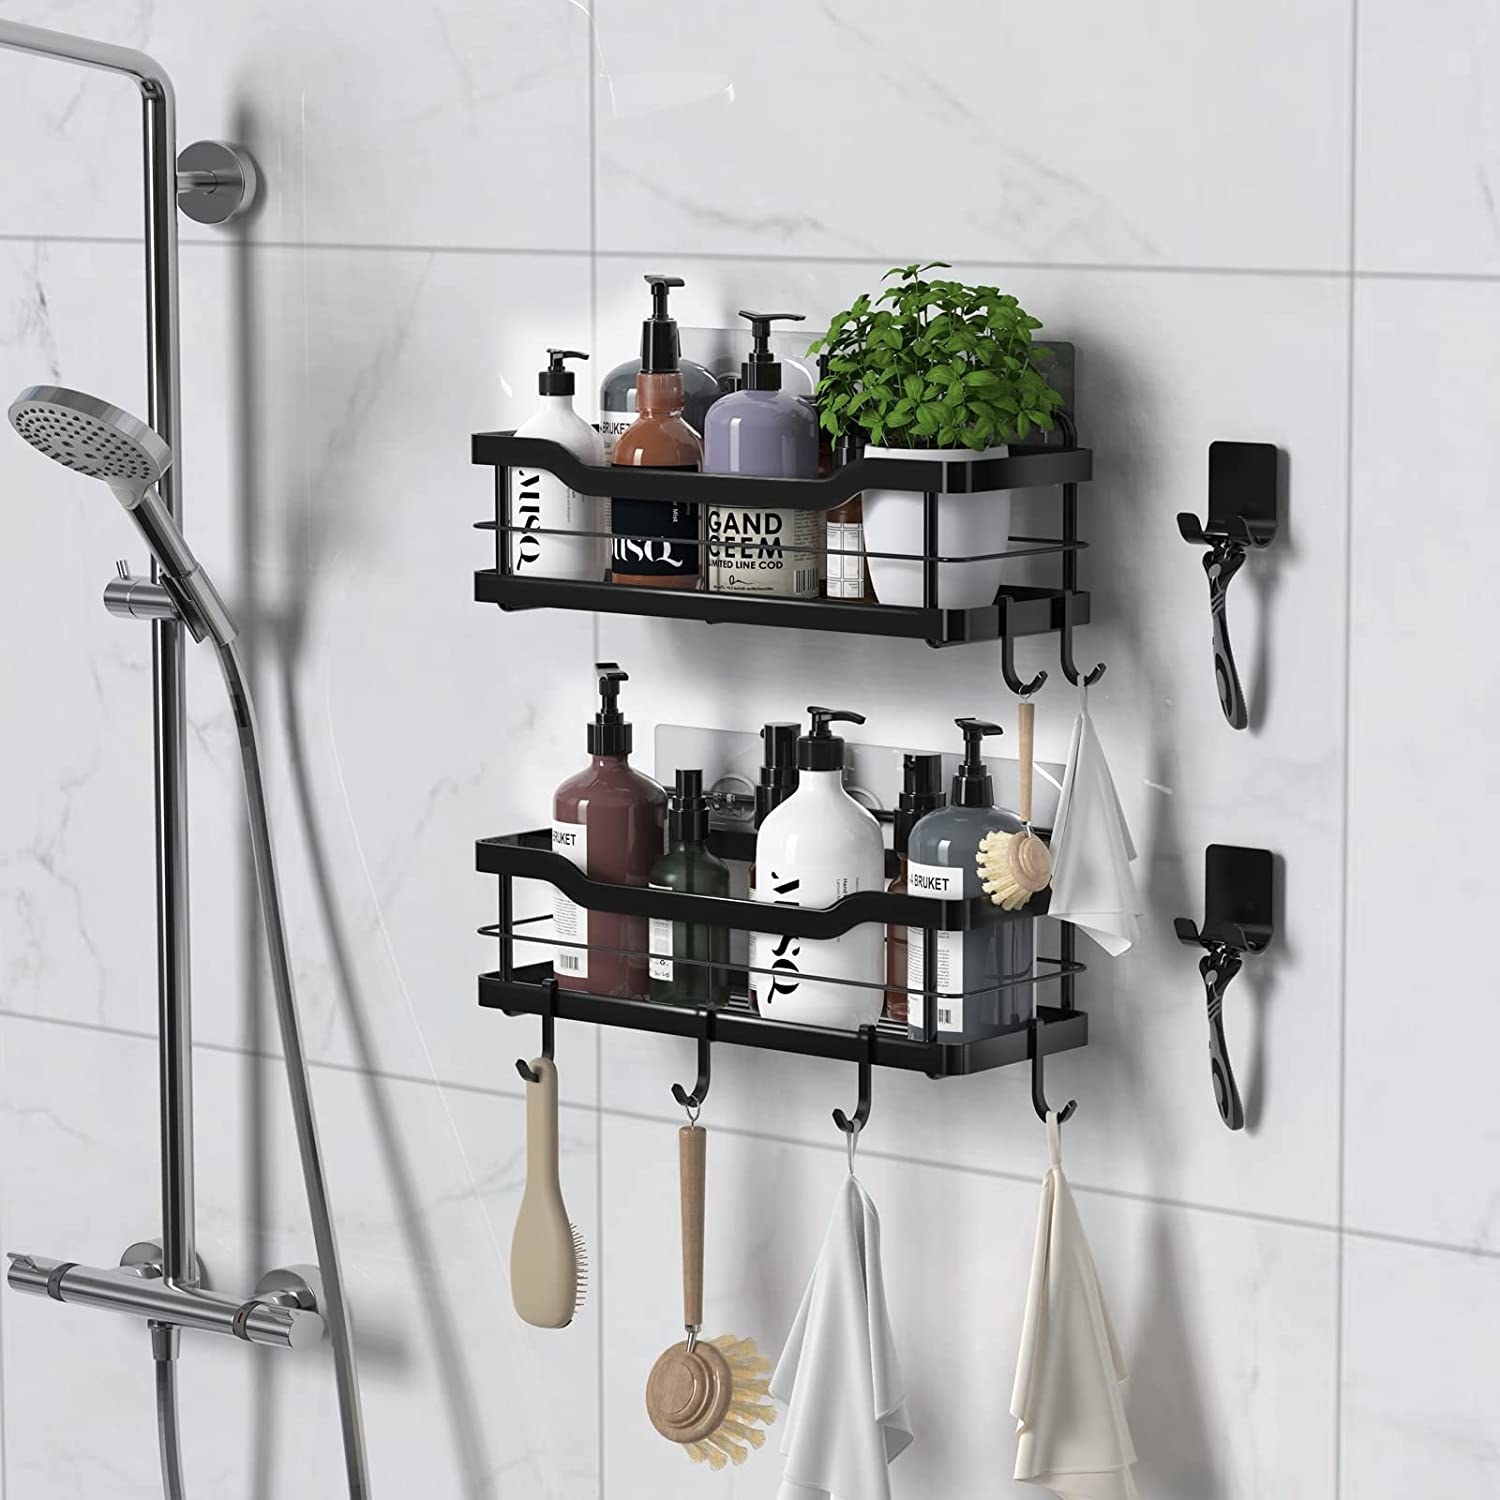 The black shower shelves are shown